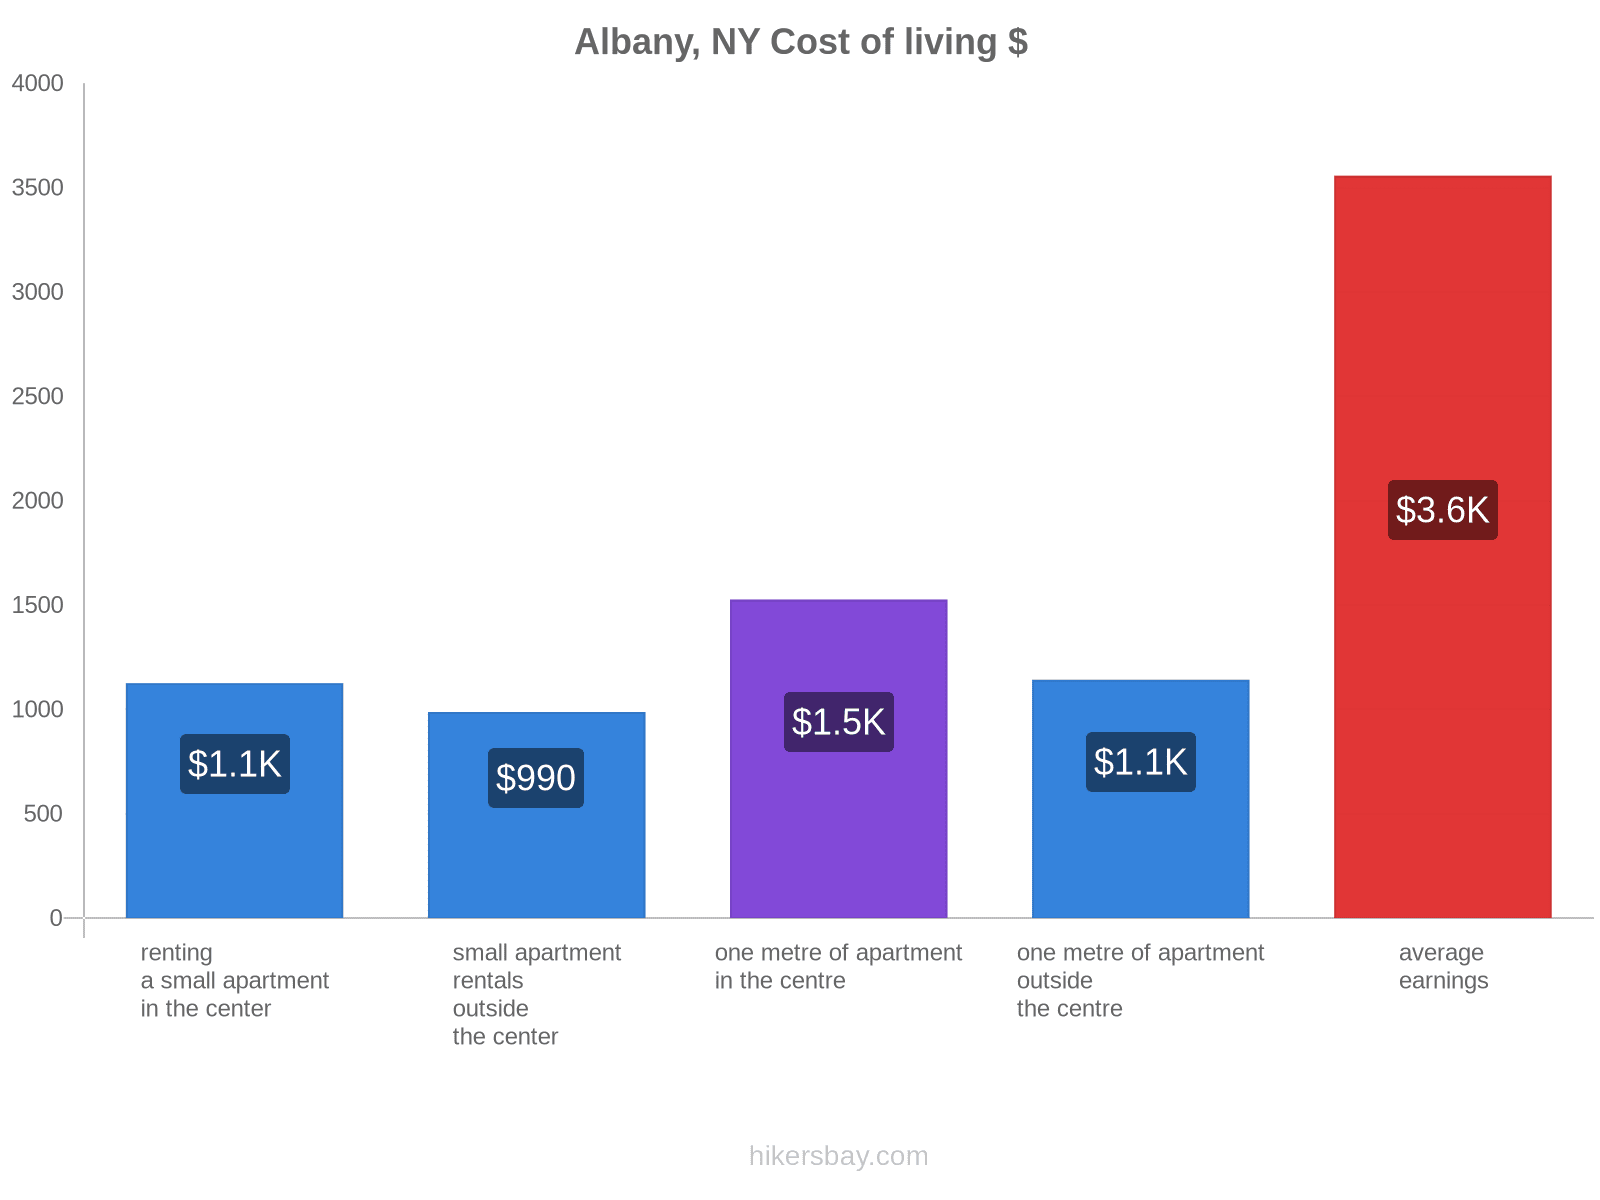 Albany, NY cost of living hikersbay.com